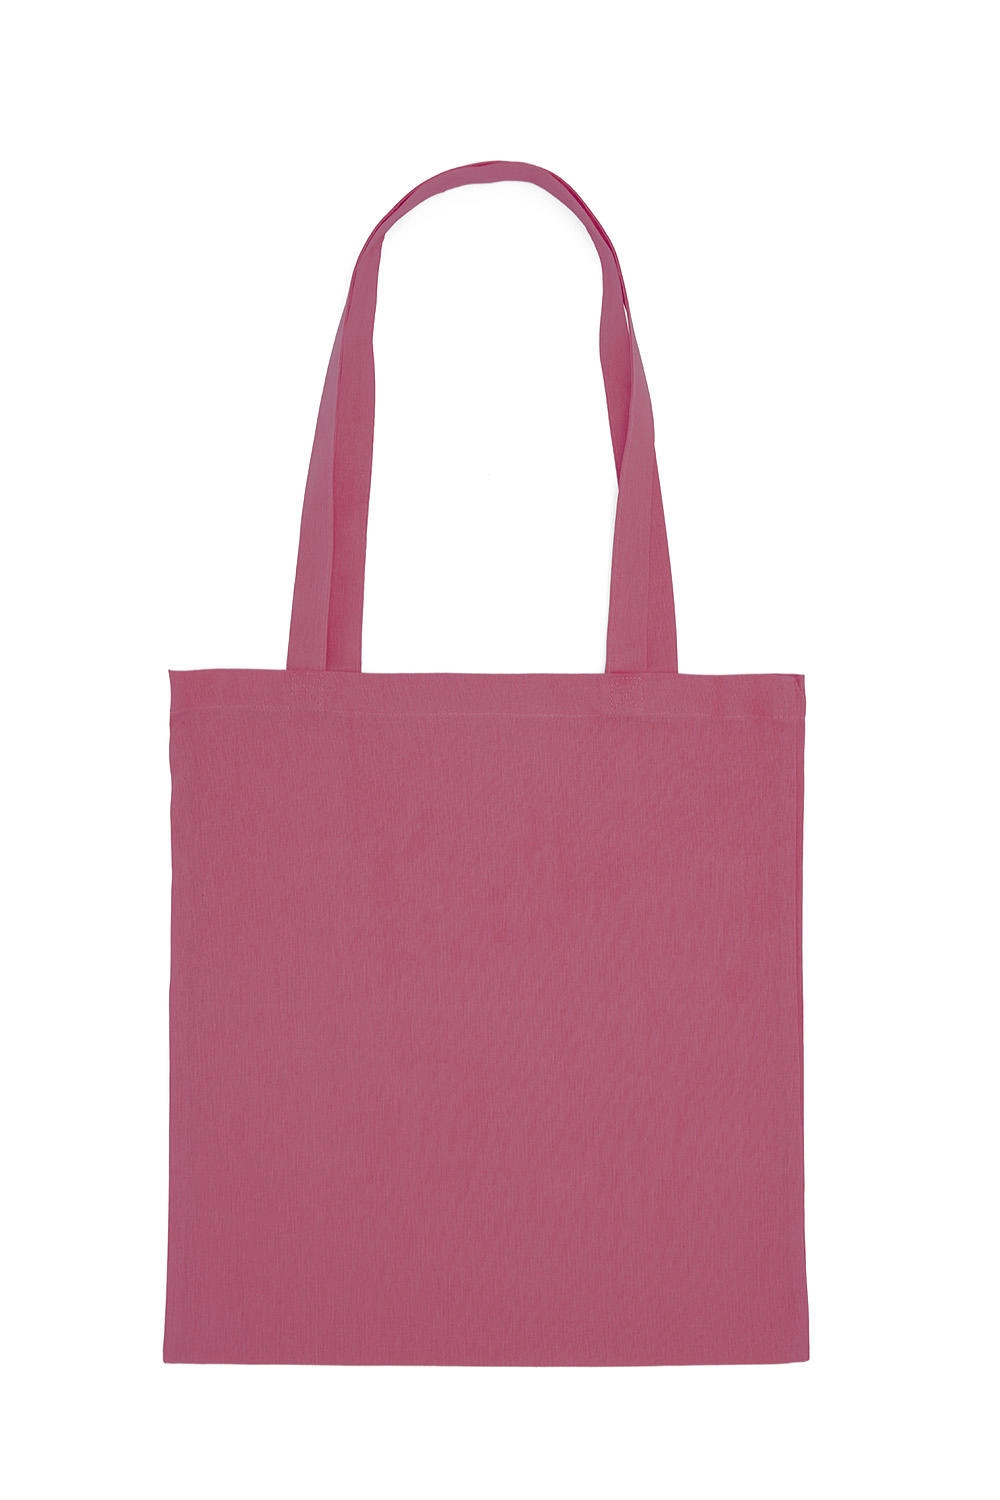 Cotton Bag LH zum Besticken und Bedrucken in der Farbe Cassis mit Ihren Logo, Schriftzug oder Motiv.